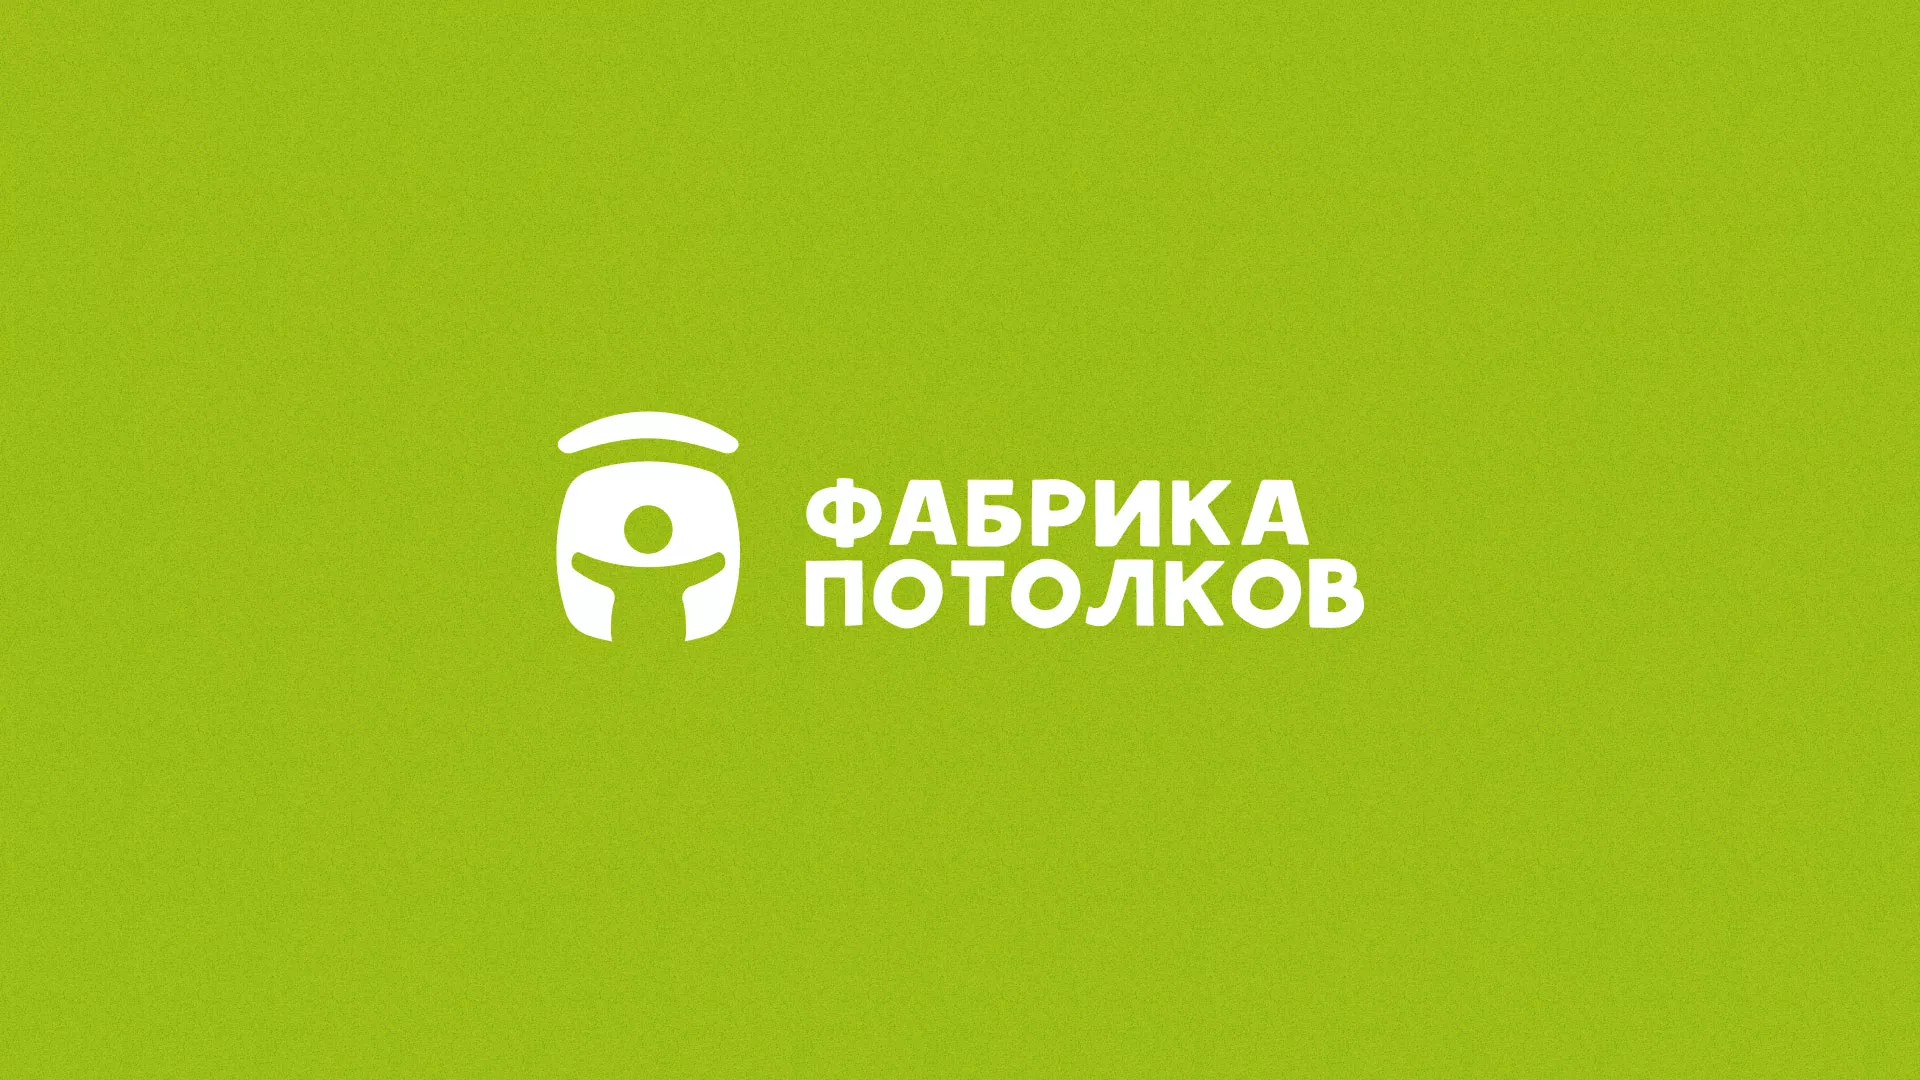 Разработка логотипа для производства натяжных потолков в Комсомольске-на-Амуре